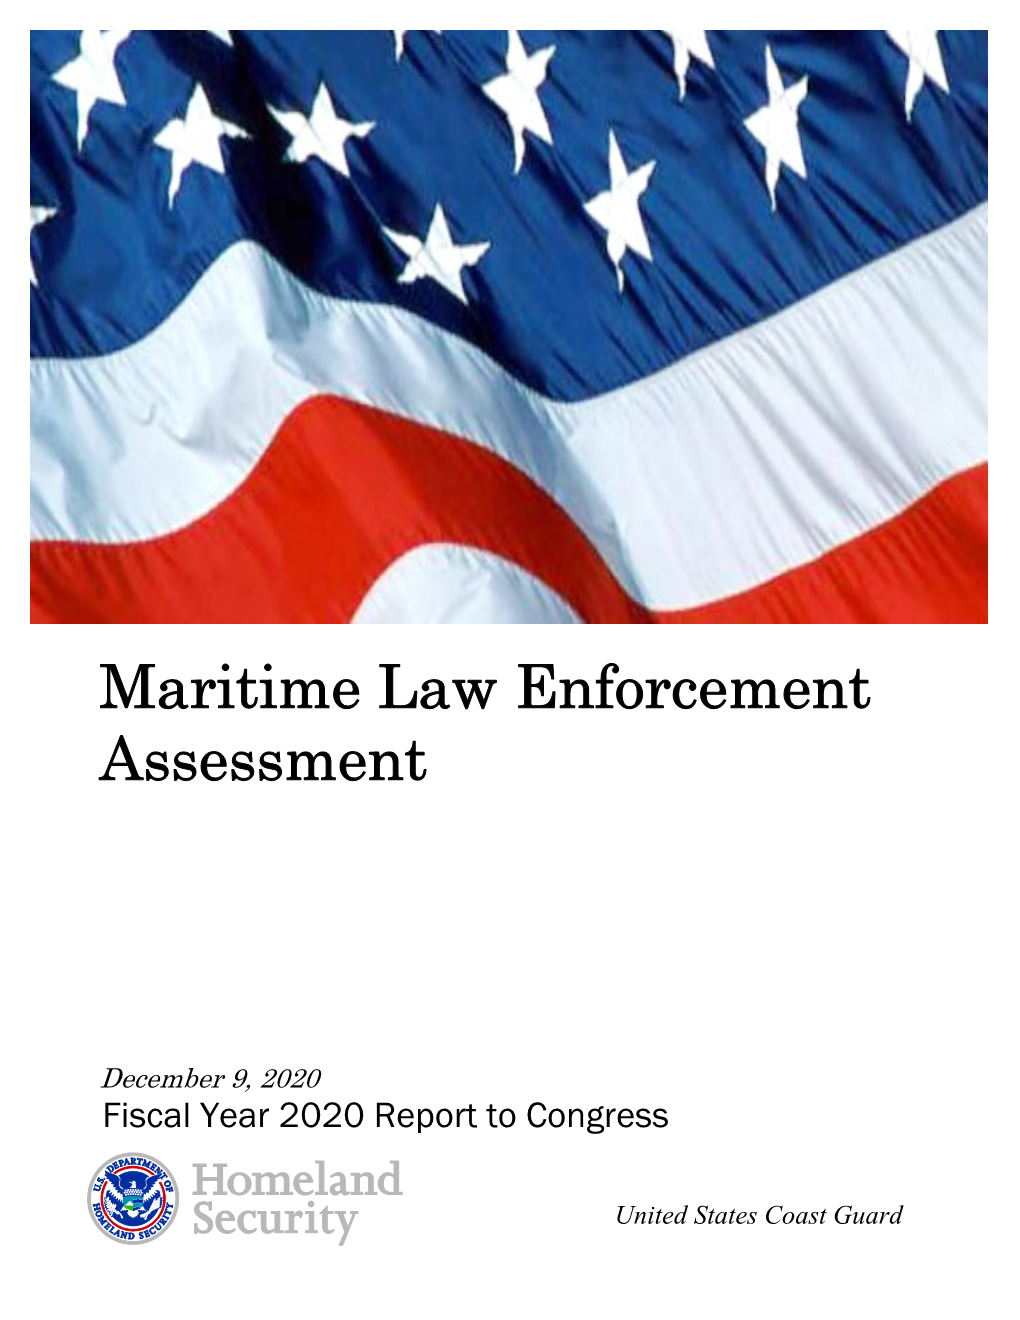 Maritime Law Enforcement Assessment